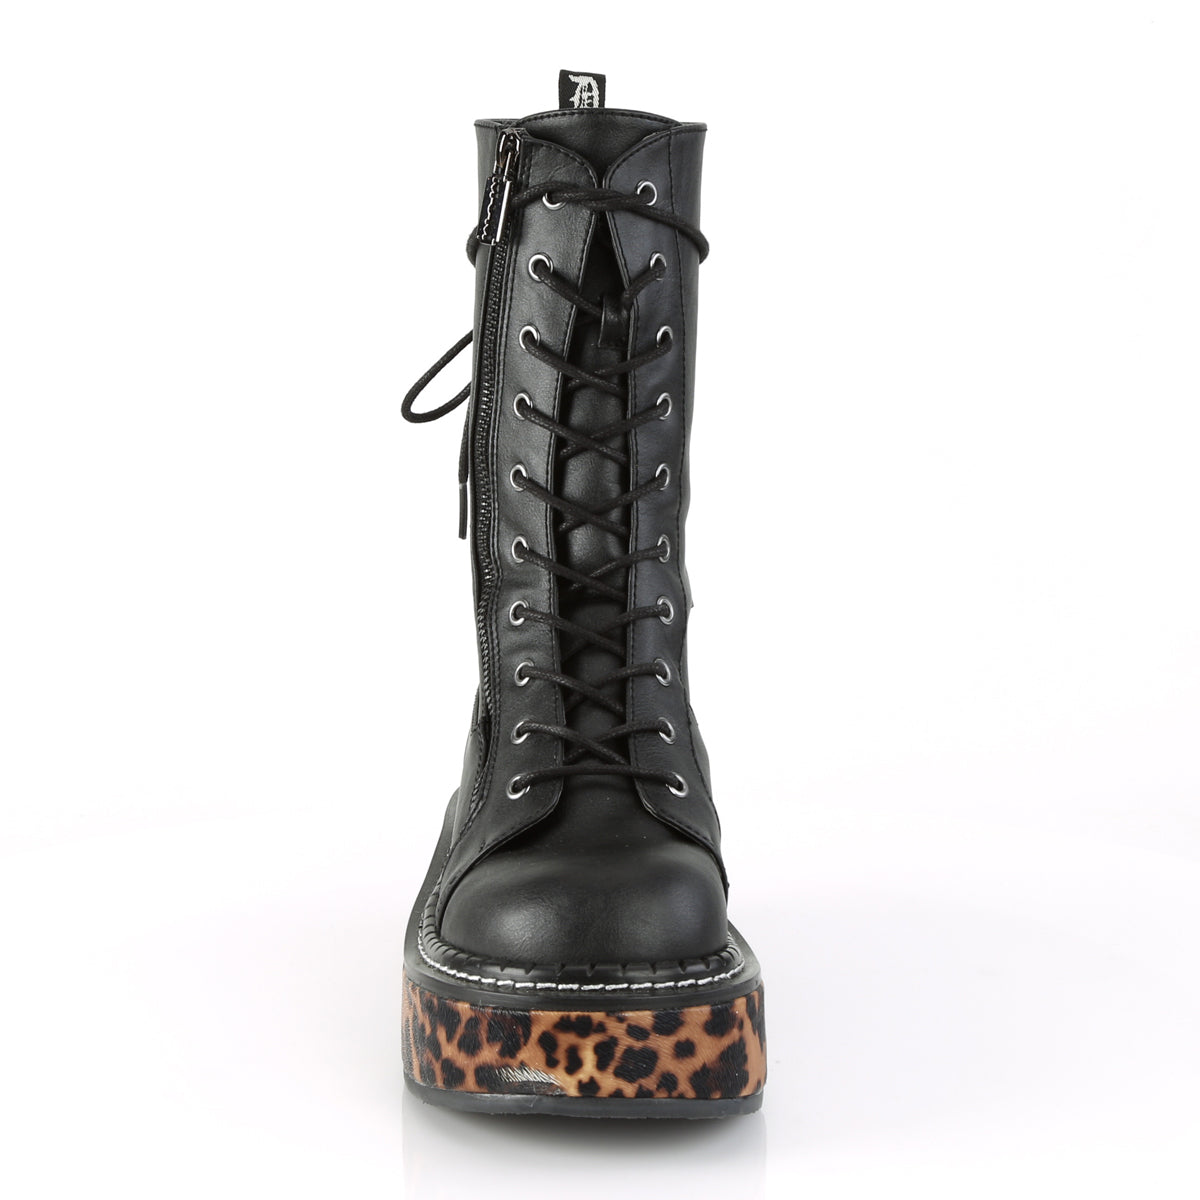 Cheetah Platform Boots